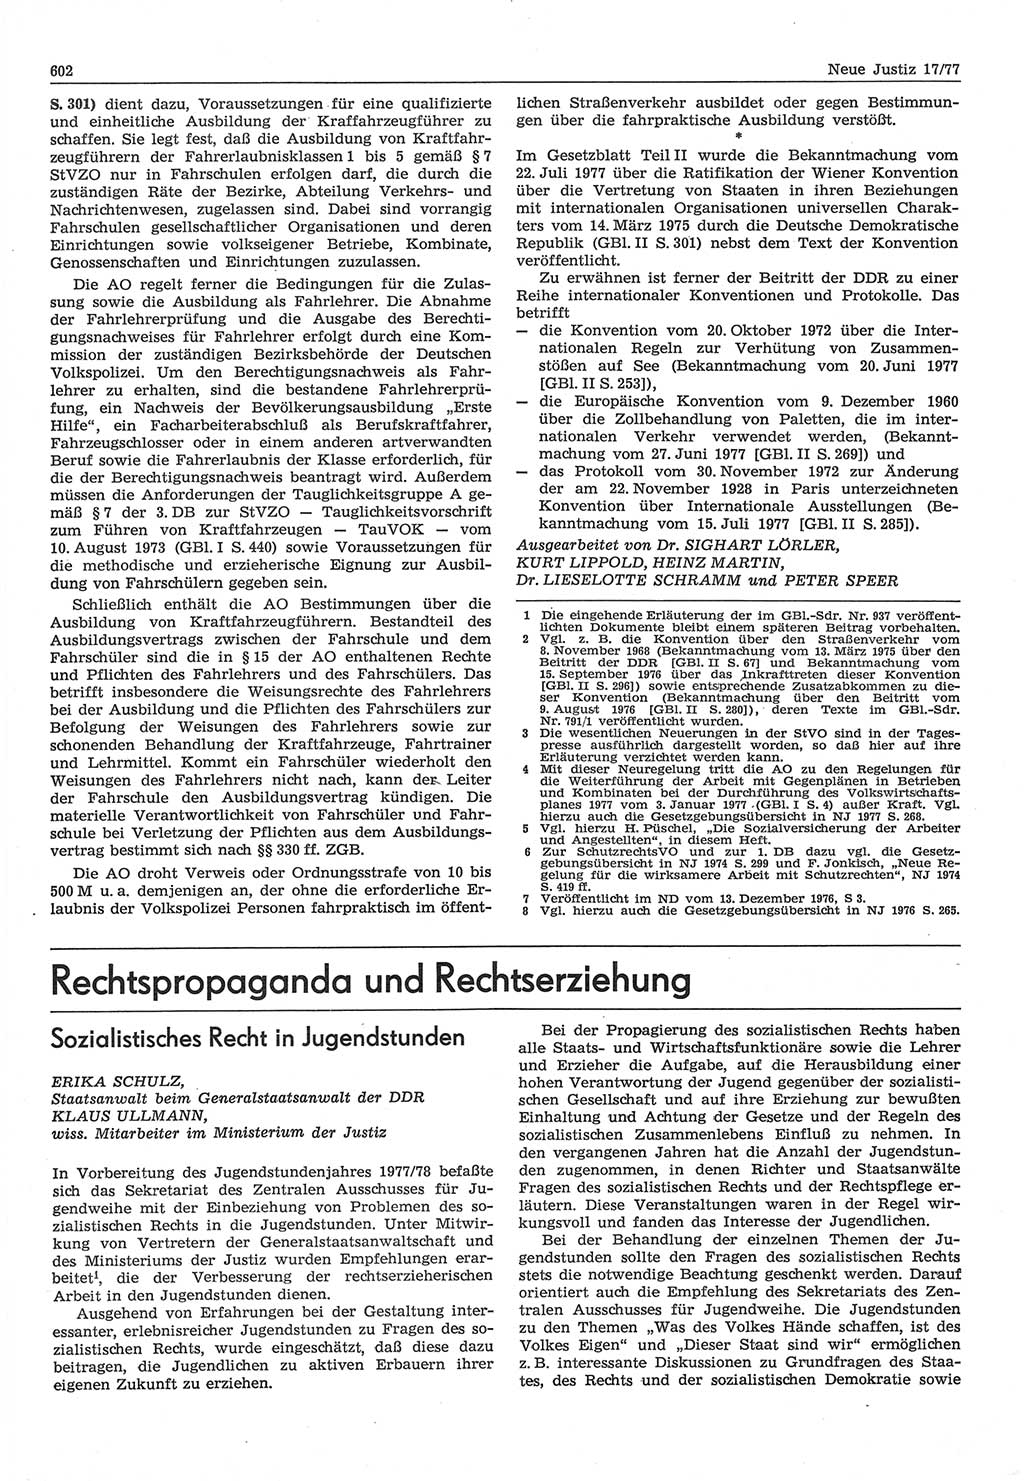 Neue Justiz (NJ), Zeitschrift für Recht und Rechtswissenschaft-Zeitschrift, sozialistisches Recht und Gesetzlichkeit, 31. Jahrgang 1977, Seite 602 (NJ DDR 1977, S. 602)